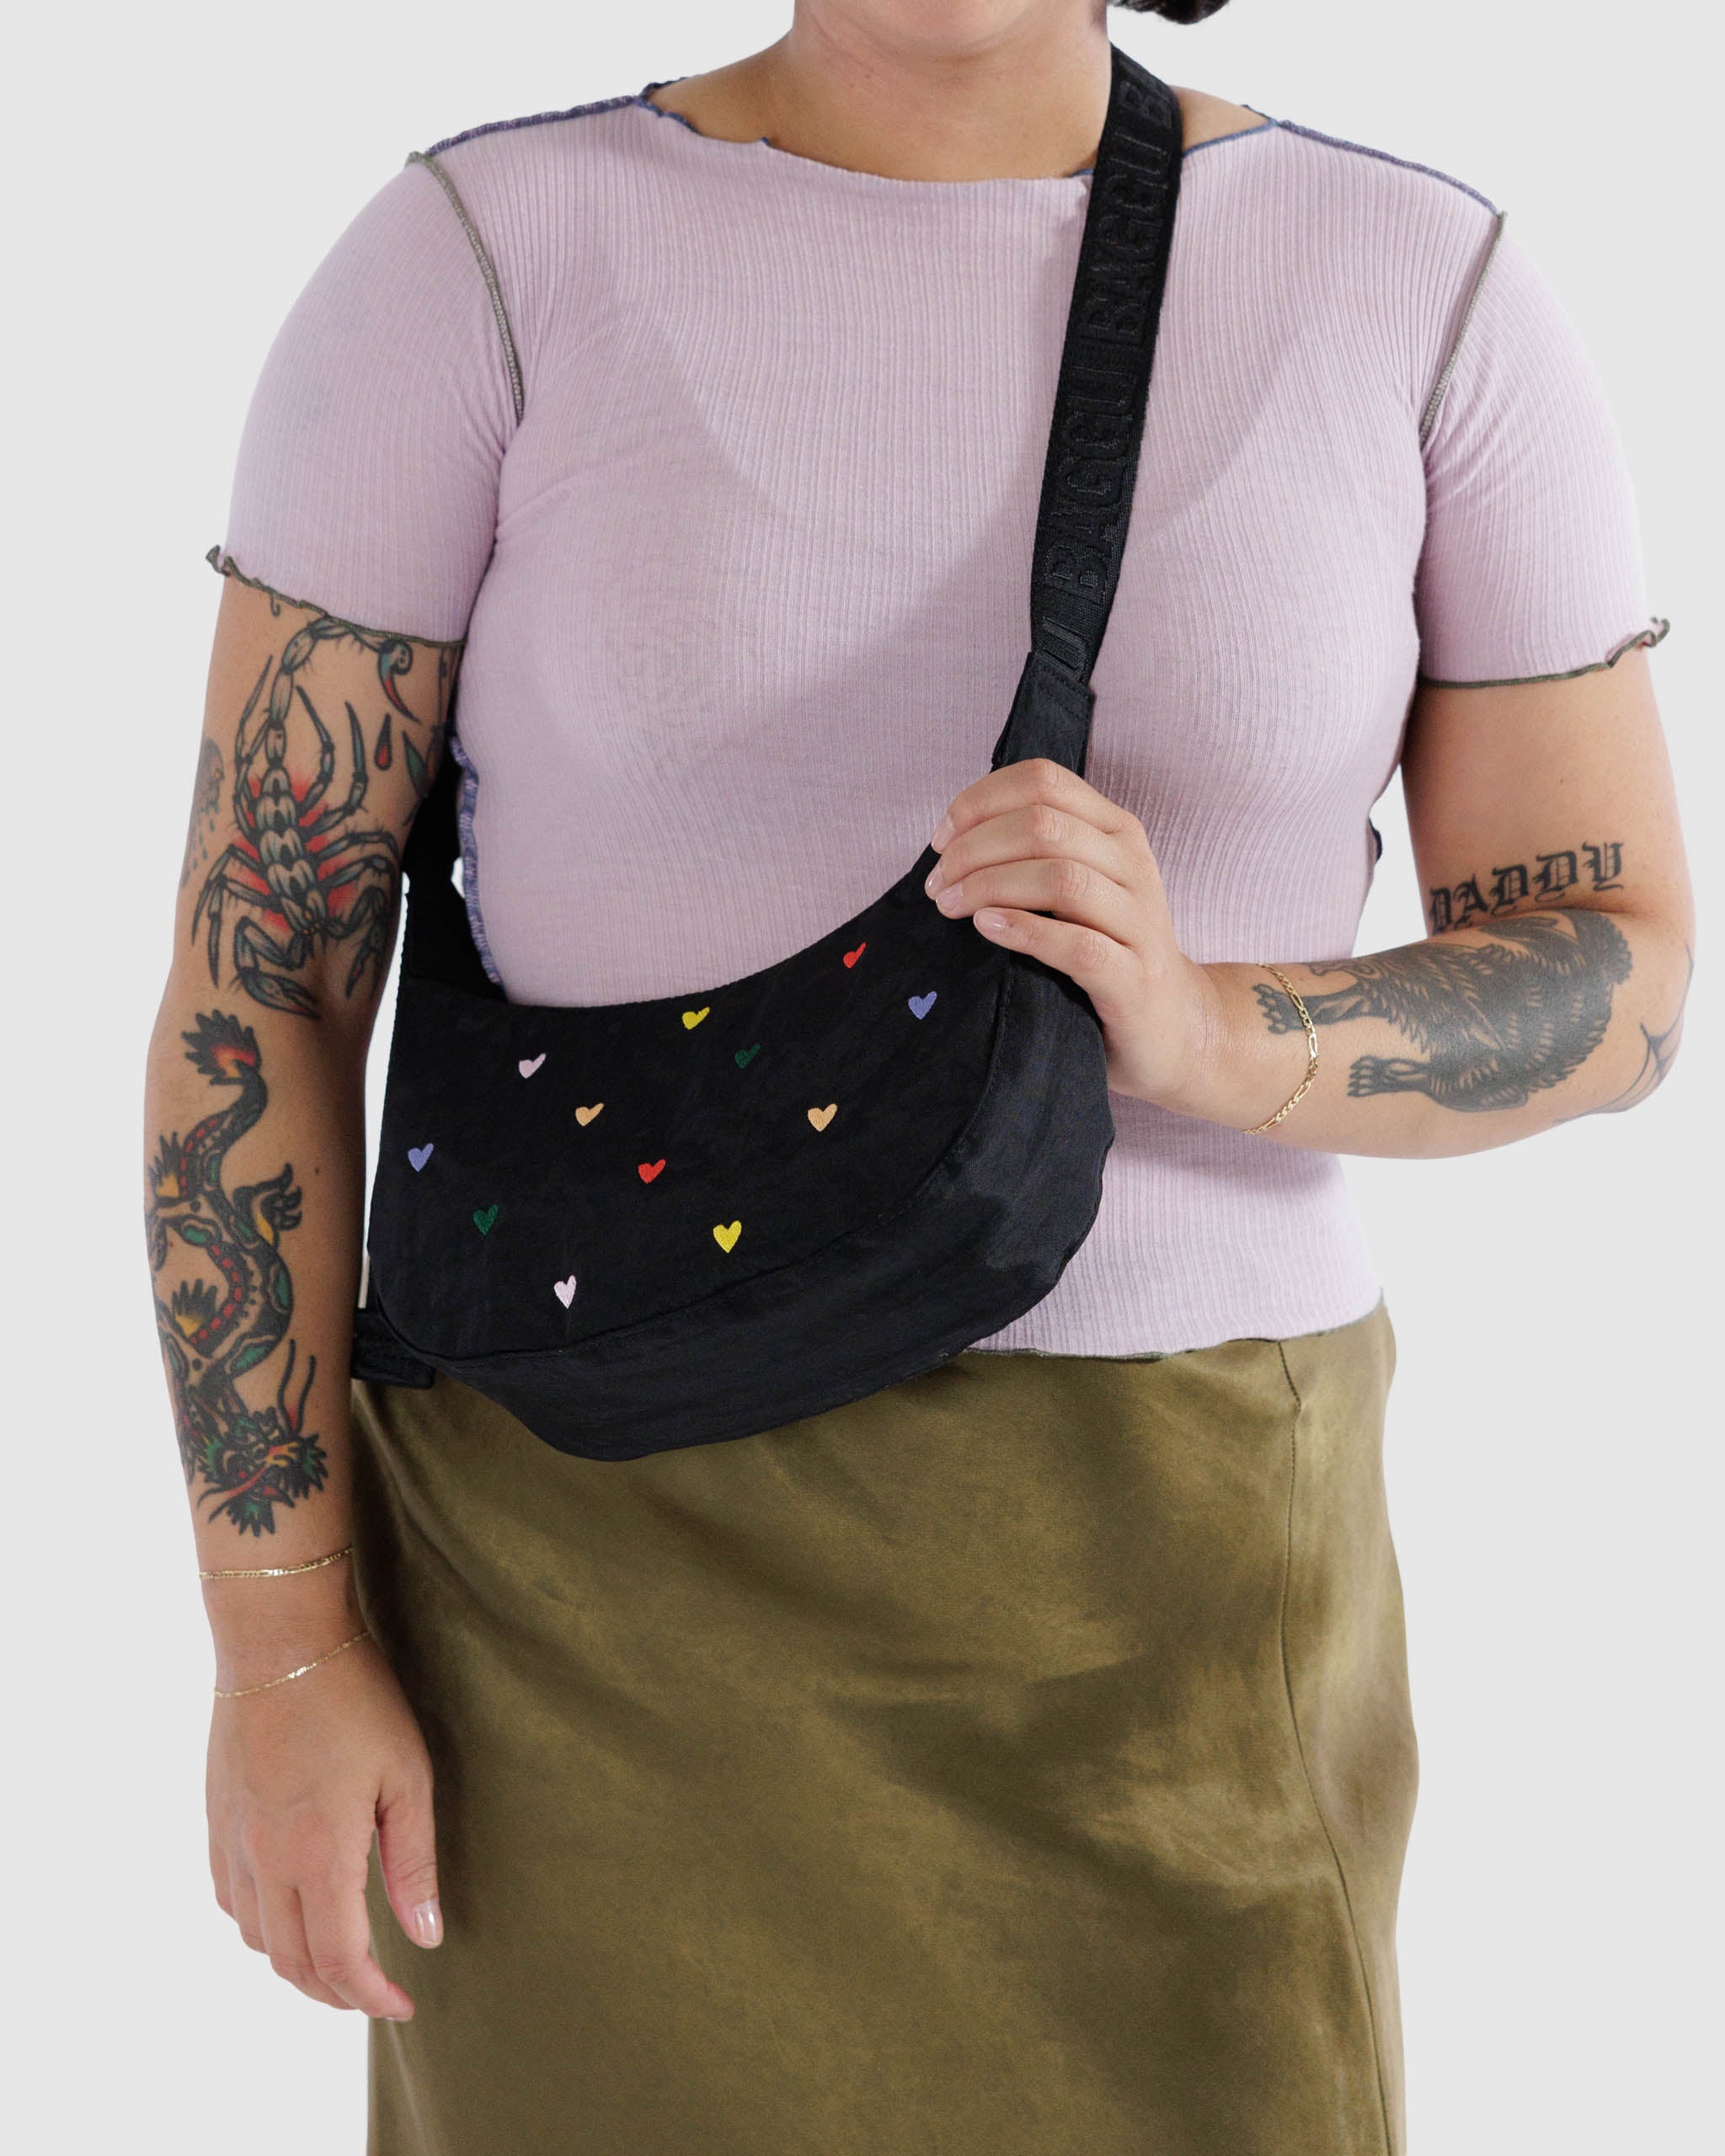 Mini Crescent Nylon Bag - Embroidered Hearts